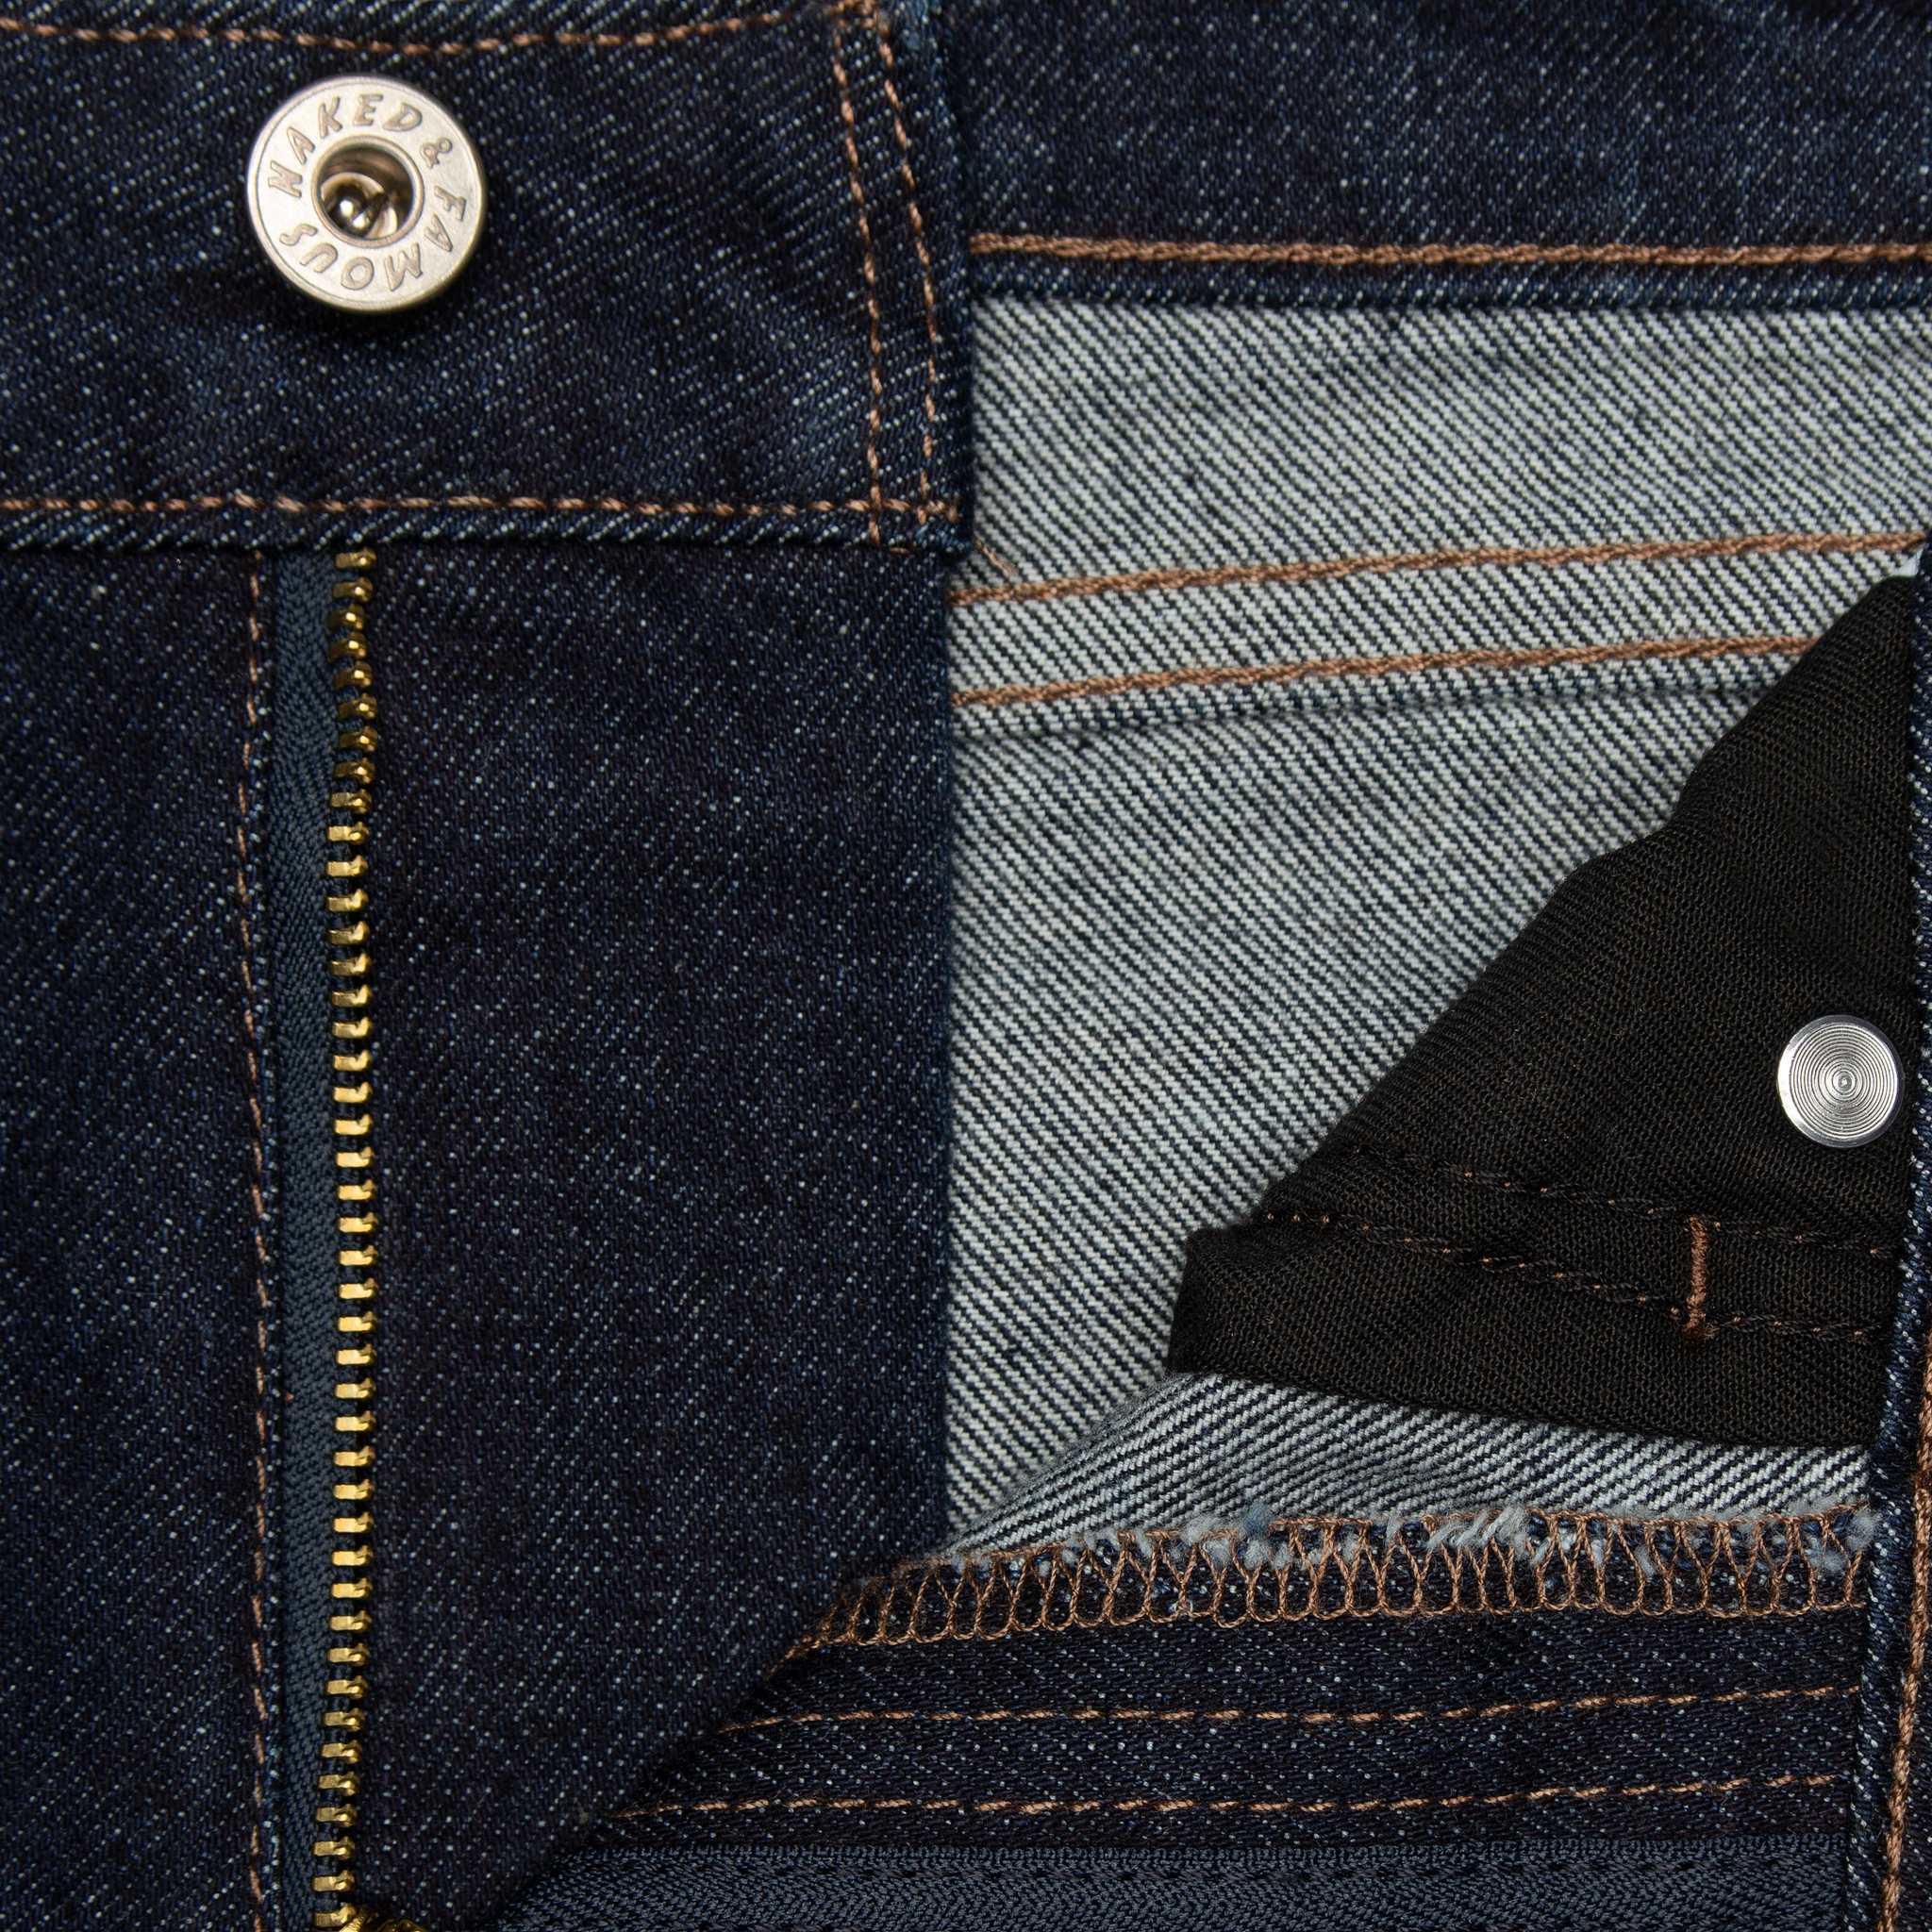  Women’s Blue Comfort jeans - zip fly 